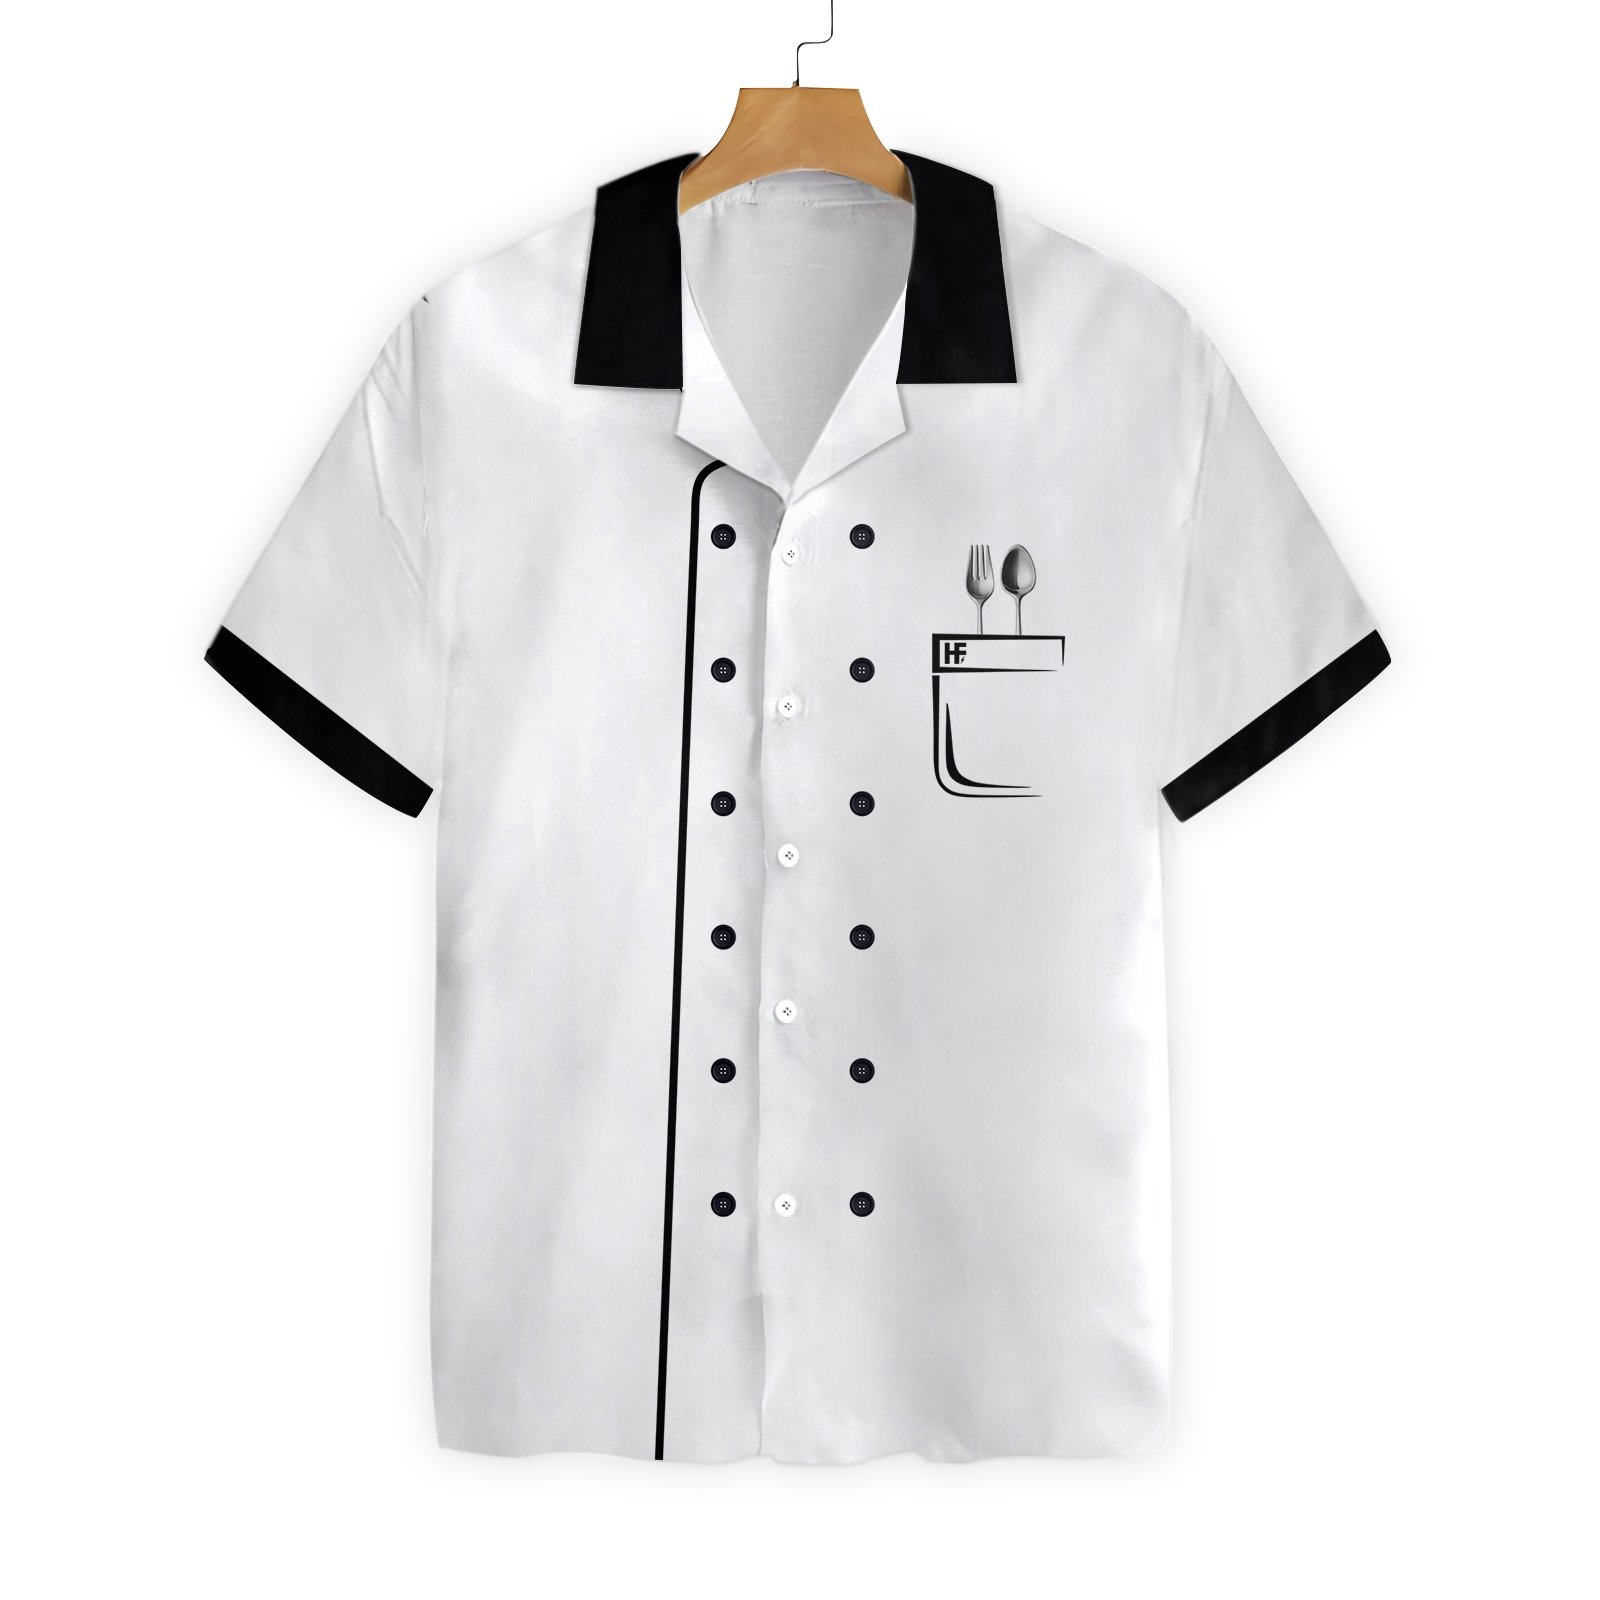 Chef Jacket Akm22 1201 Hawaiian Shirt